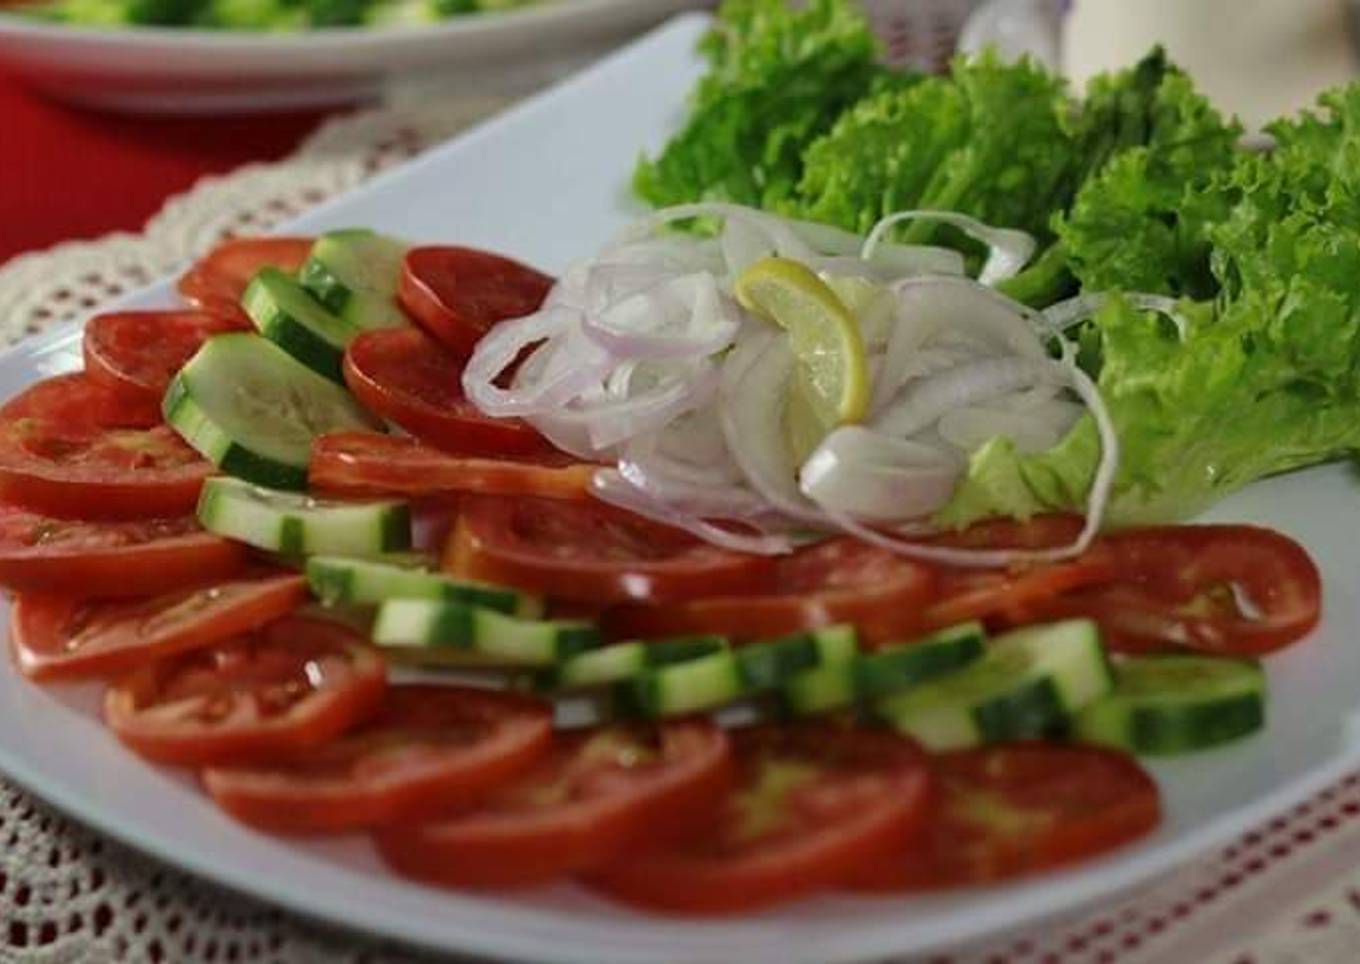 Simple salad ðŸ¥—